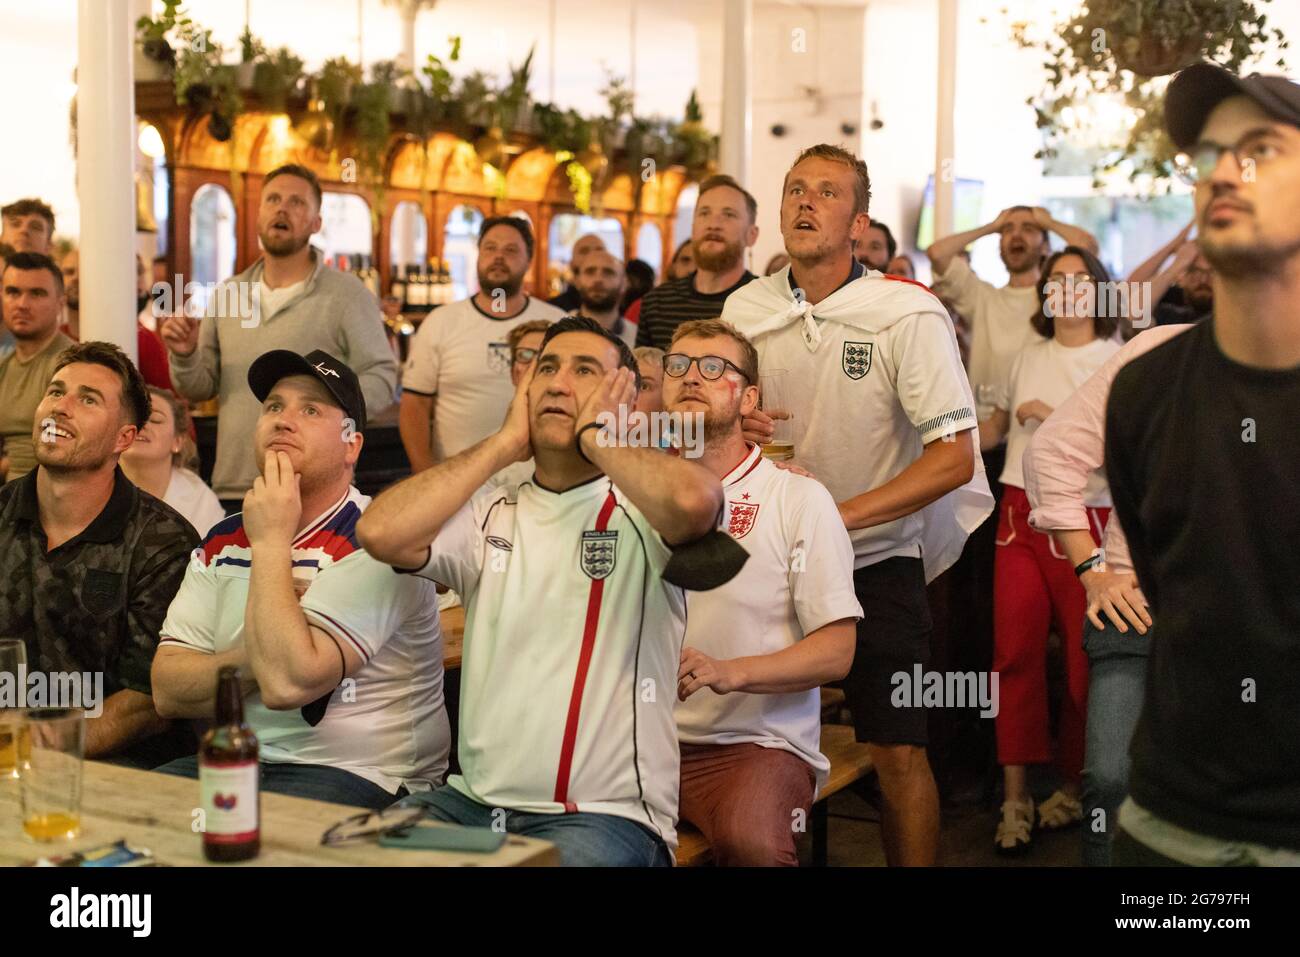 Les fans de football anglais regardent la finale EURO20 entre l'Angleterre et l'Italie dans un pub à Vauxhall, Londres, Angleterre, Royaume-Uni Banque D'Images